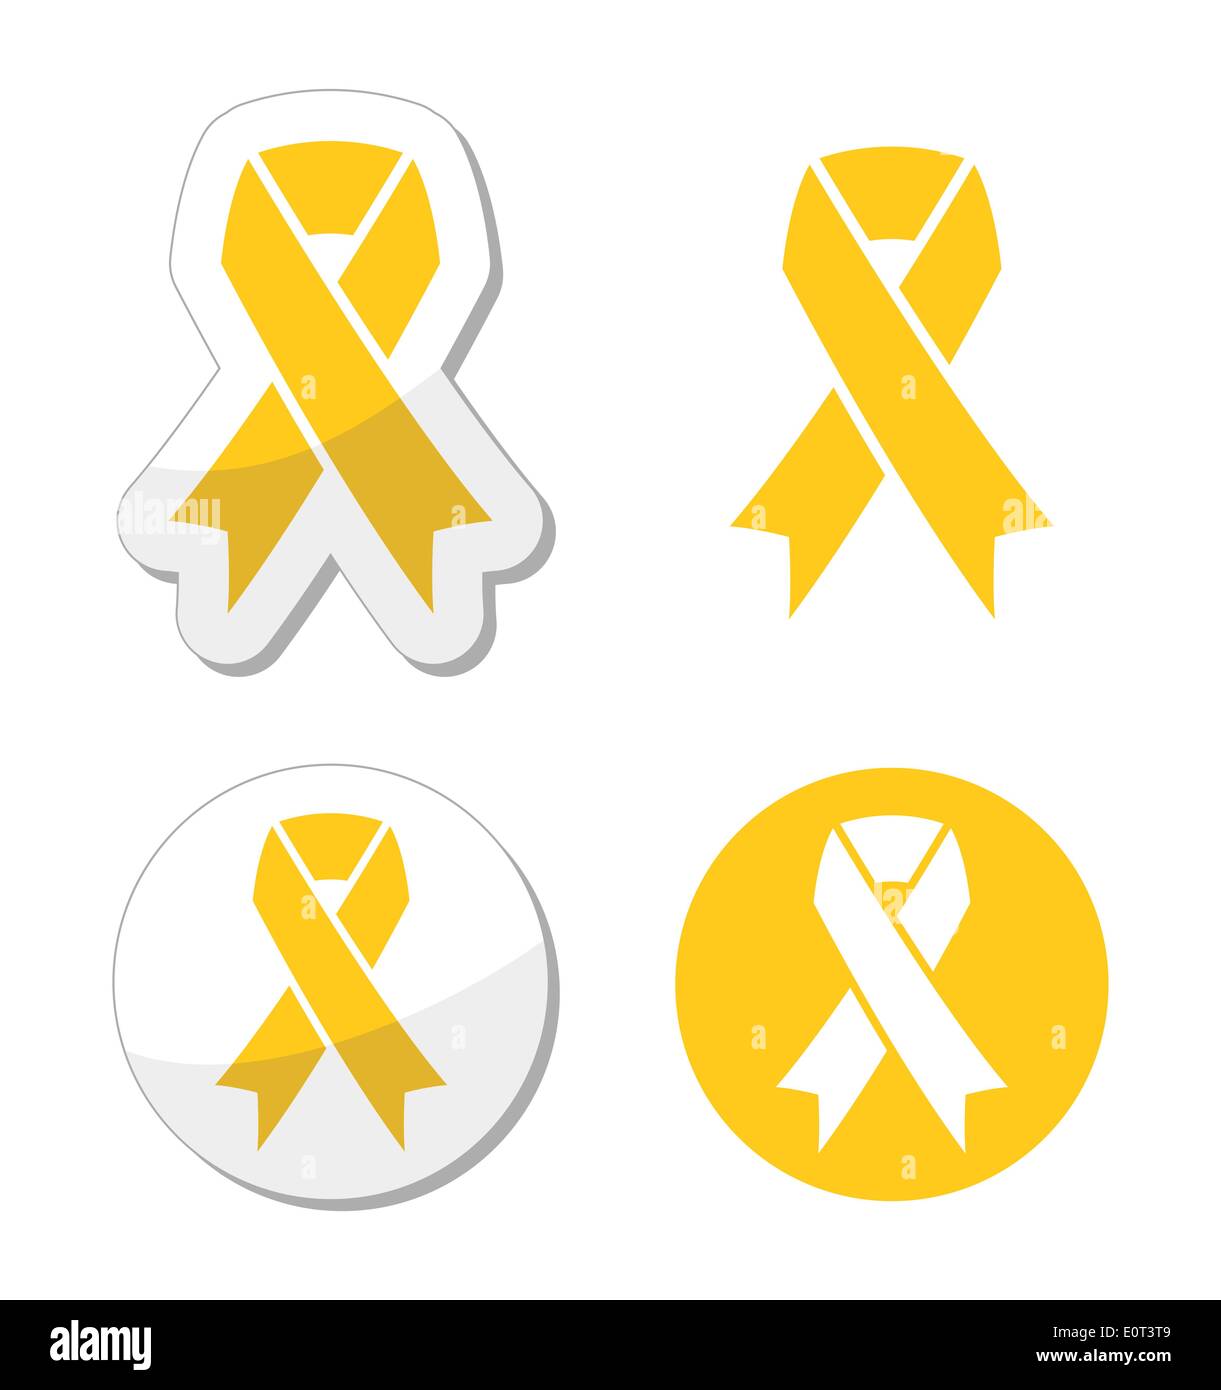 Nastro giallo - supporto per le truppe, la prevenzione dei suicidi, genitori adottivi simbolo Illustrazione Vettoriale